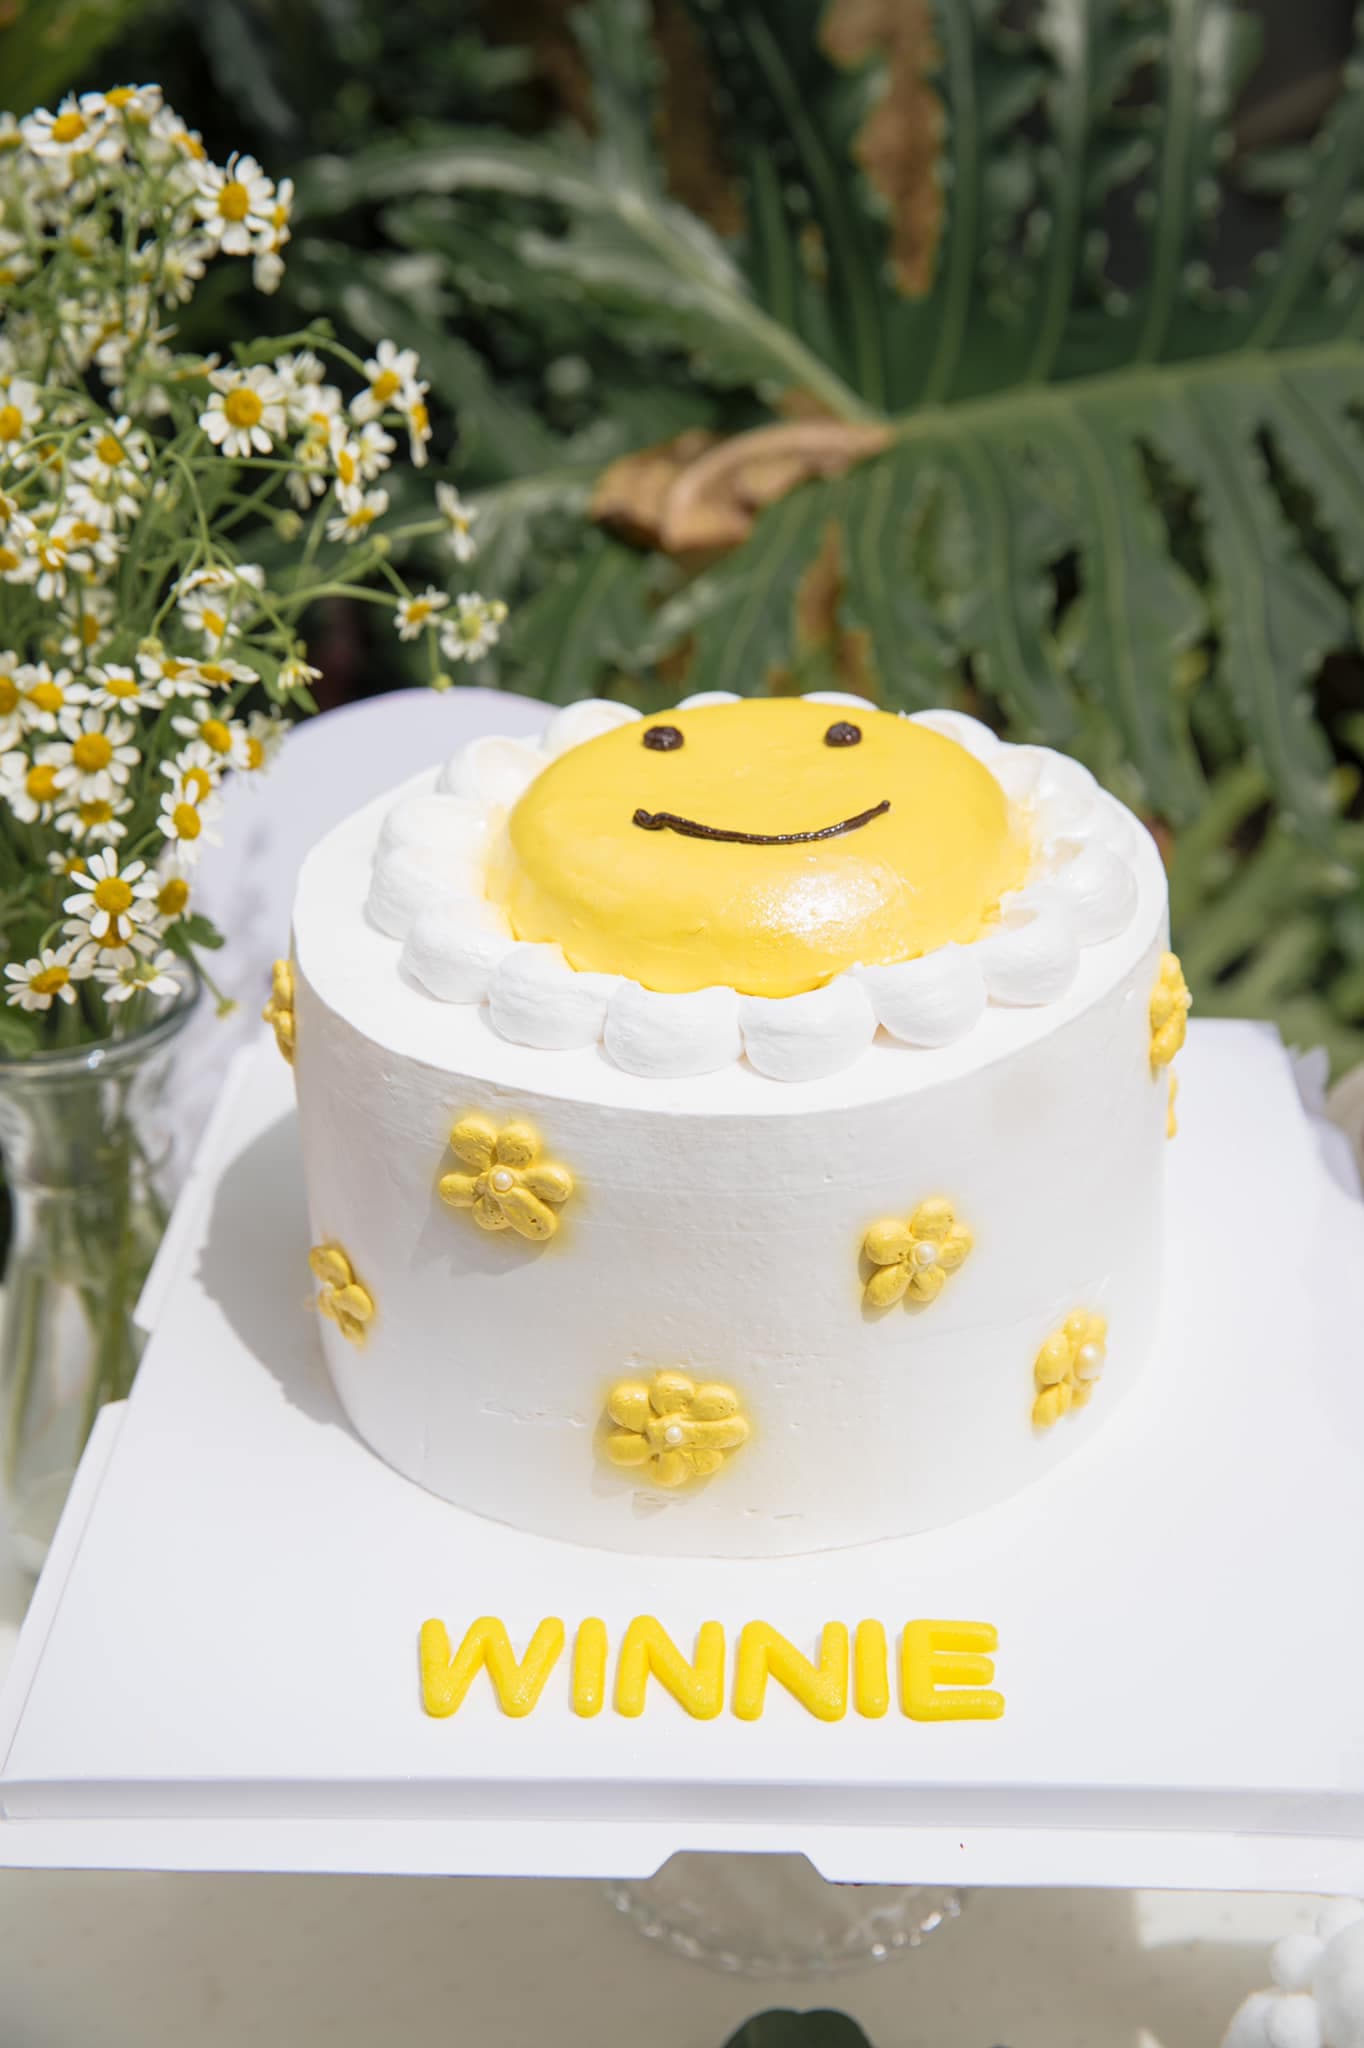 Trang trí sinh nhật bé Winnie nhà Đông Nhi  Ông Cao Thắng